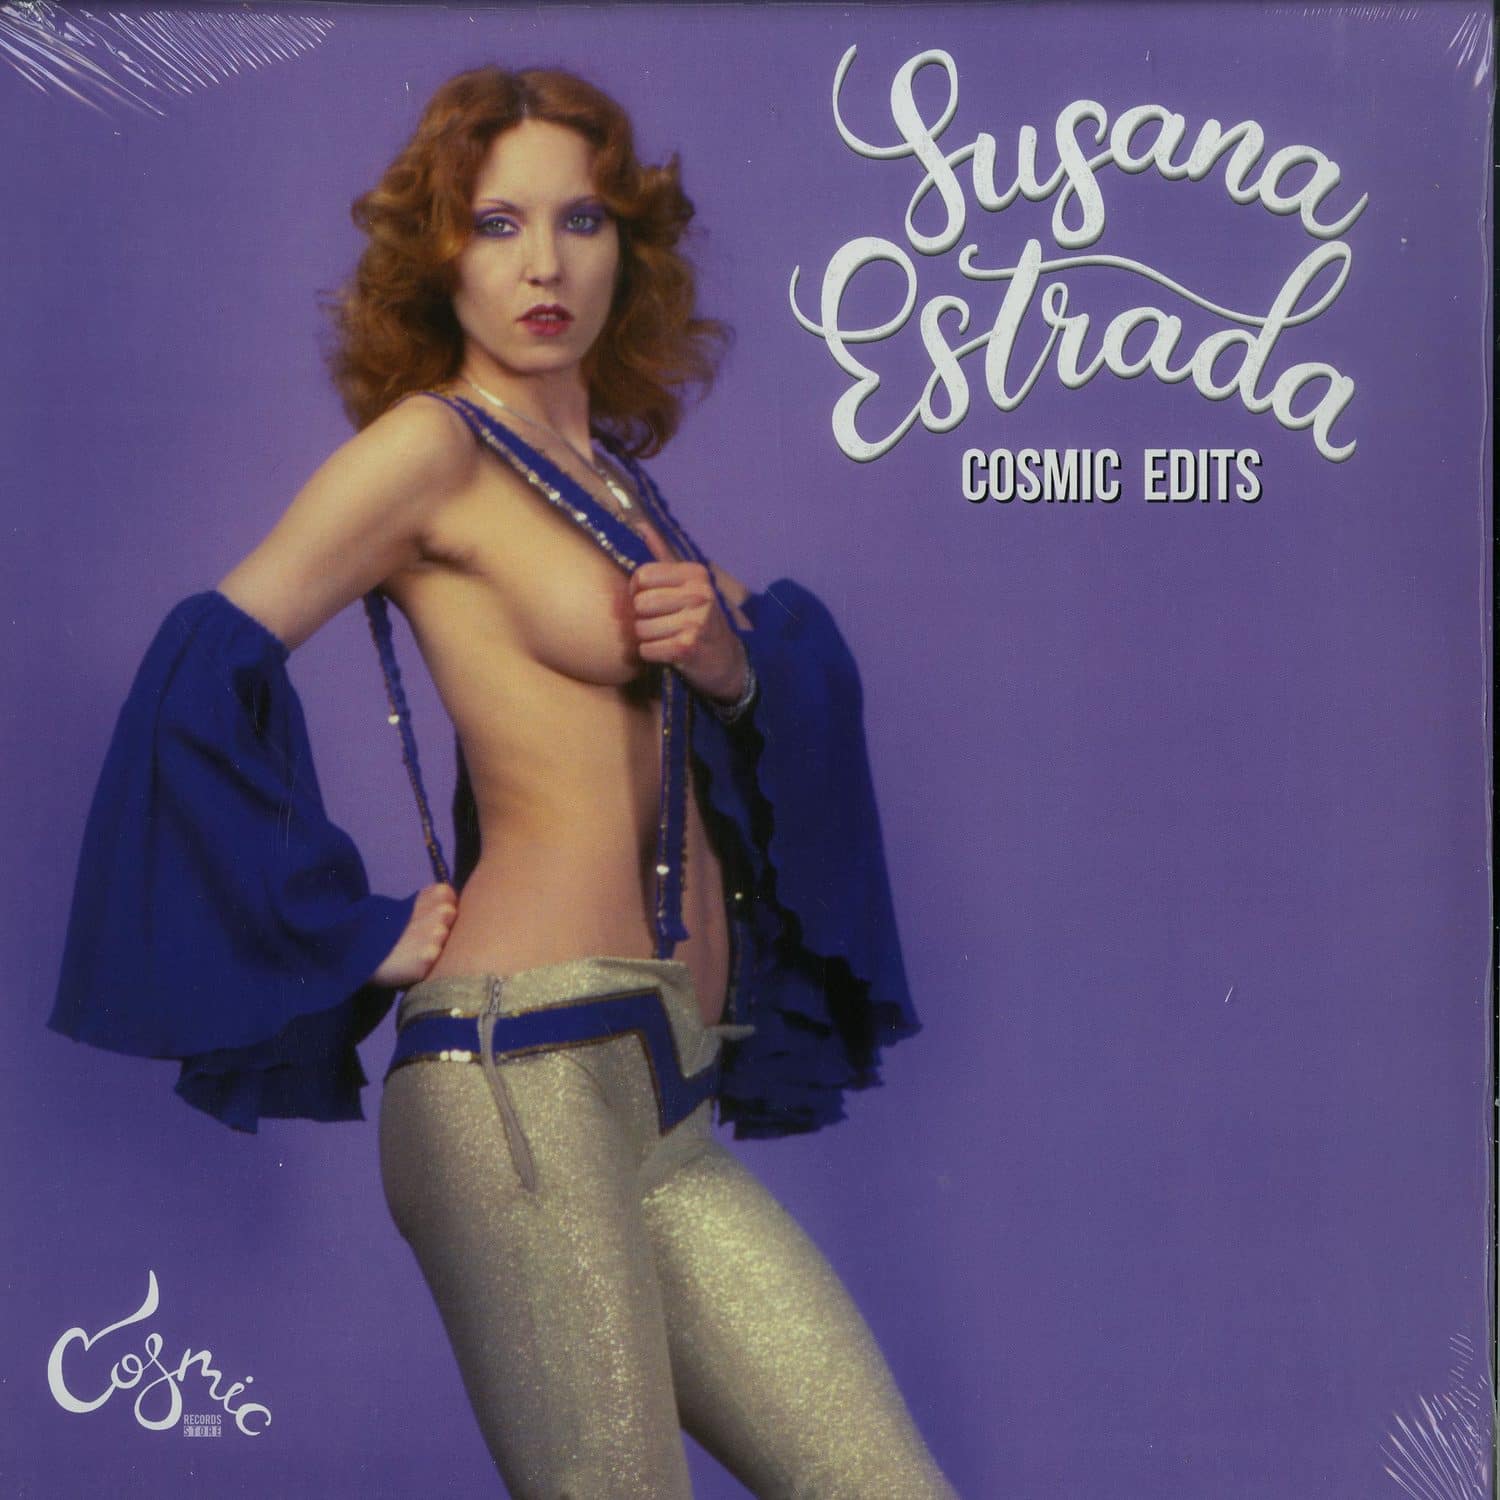 Susana Estrada - COSMIC EDITS